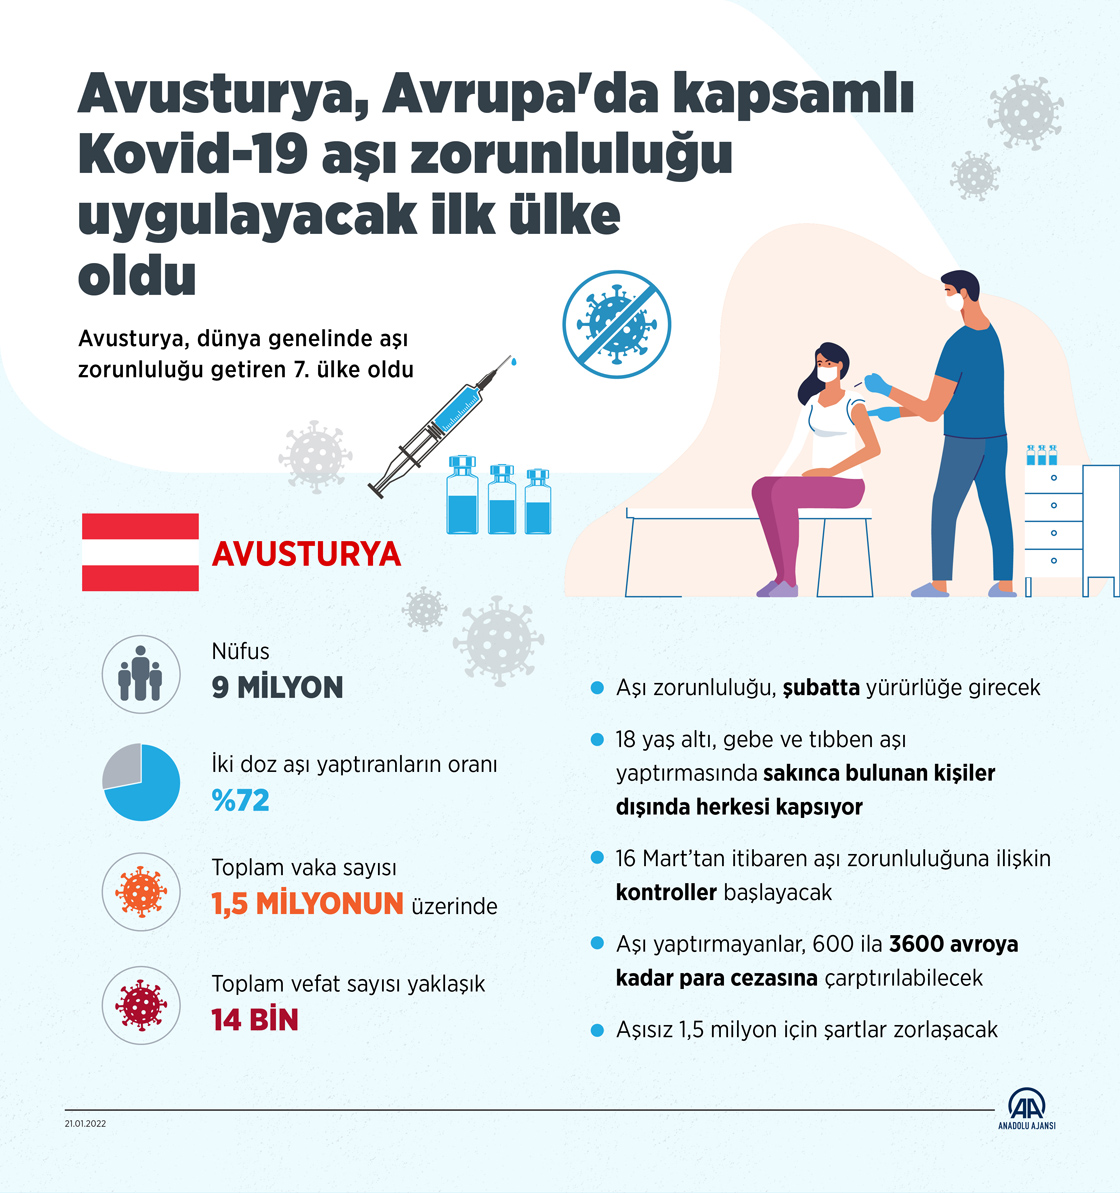 Avusturya, Avrupa'da kapsamlı Kovid-19 aşı zorunluluğu uygulayacak ilk ülke oldu